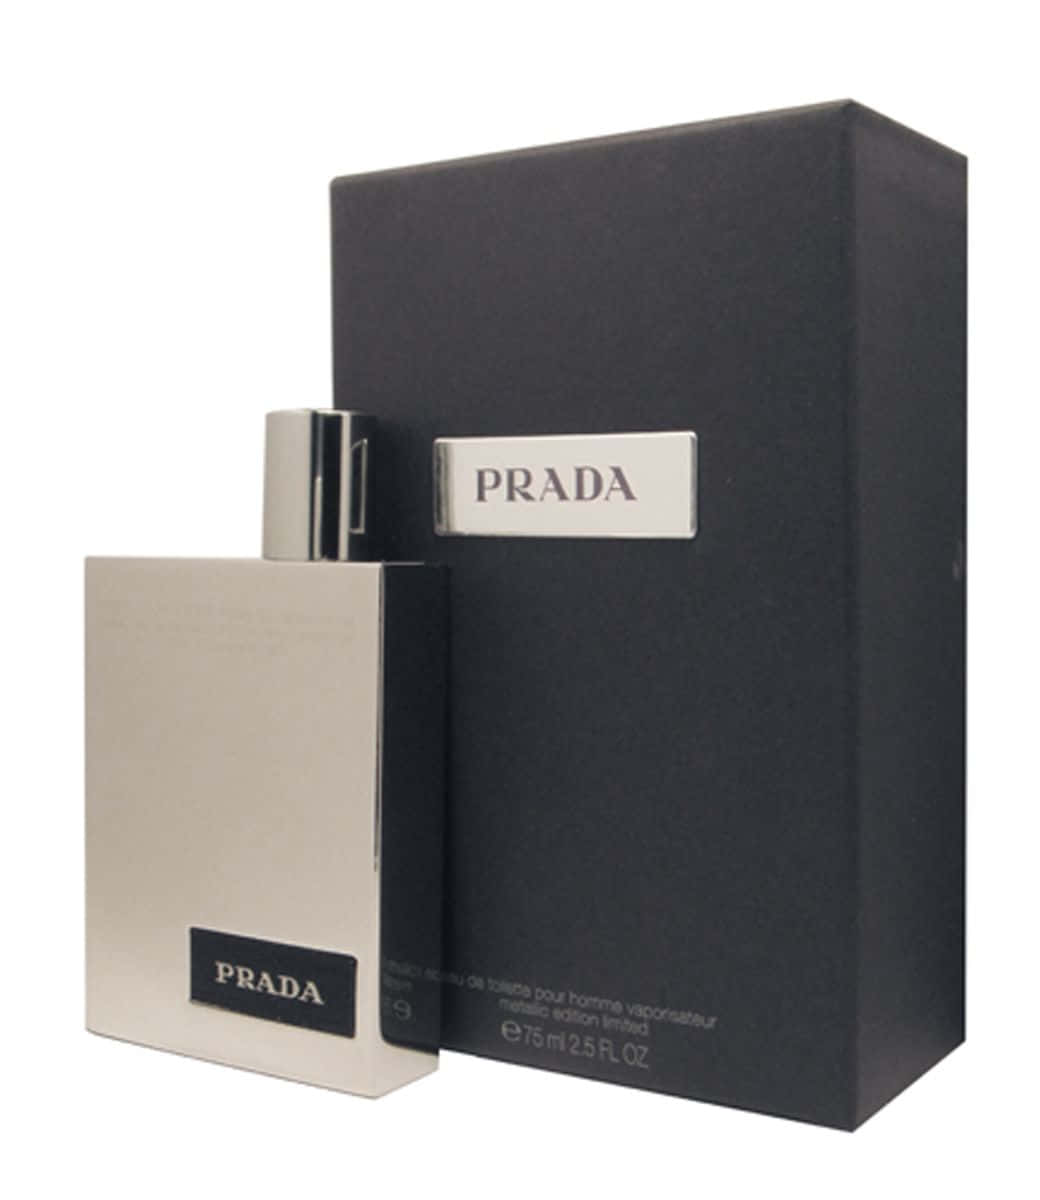 "Forever Classic - The Prada Brand."